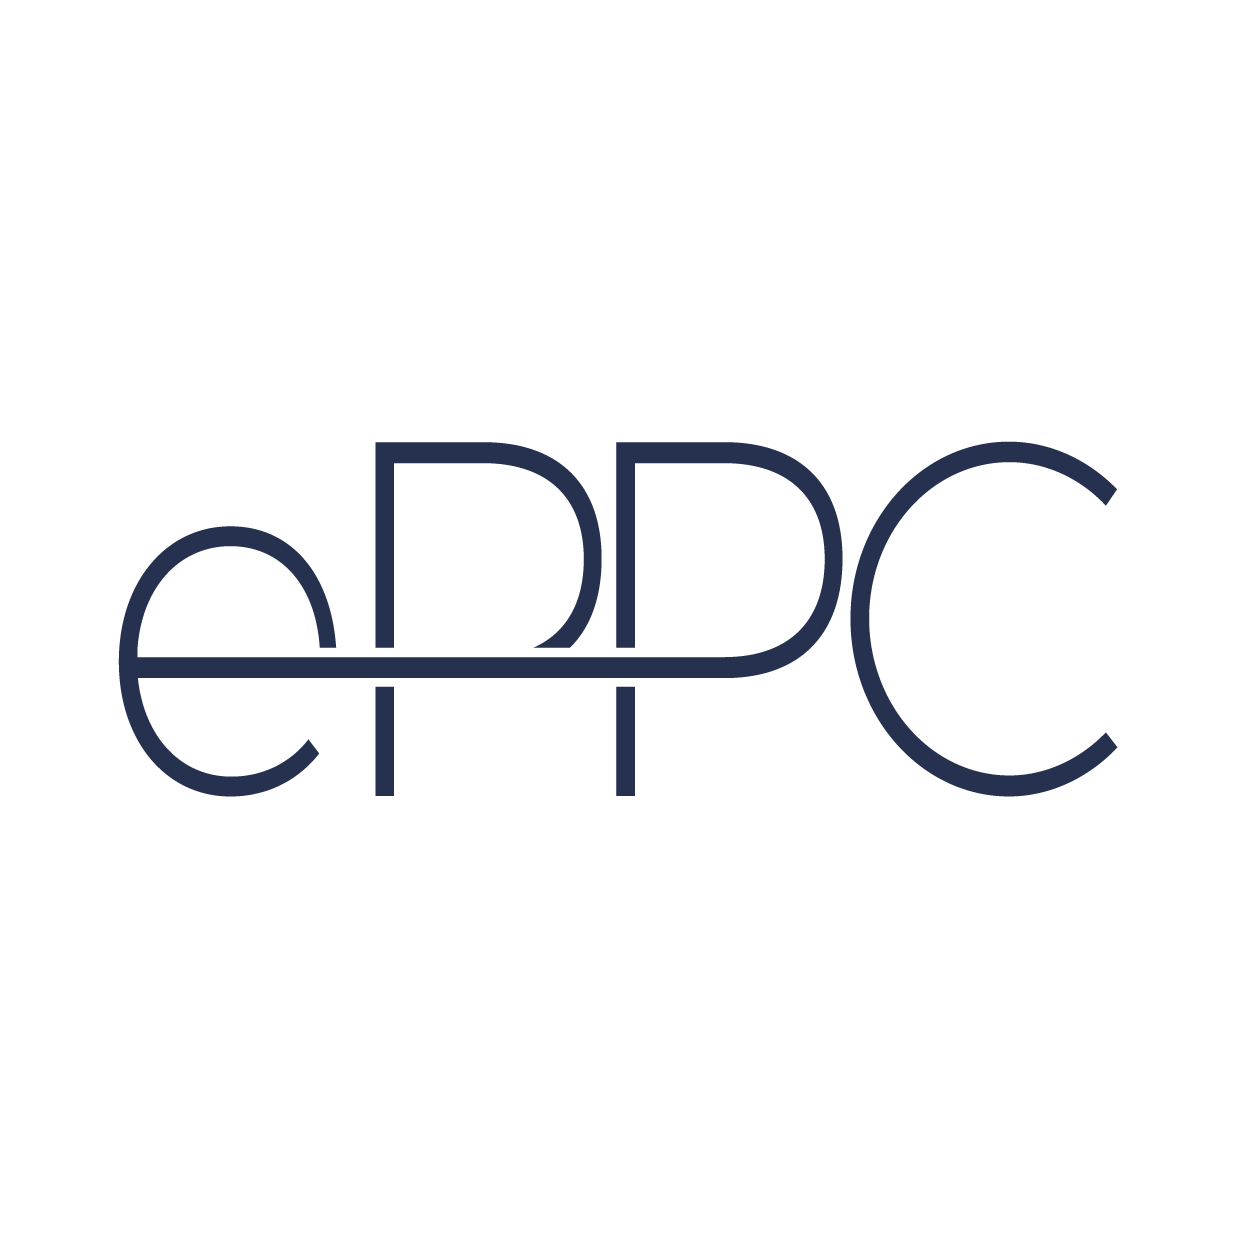 ePPC